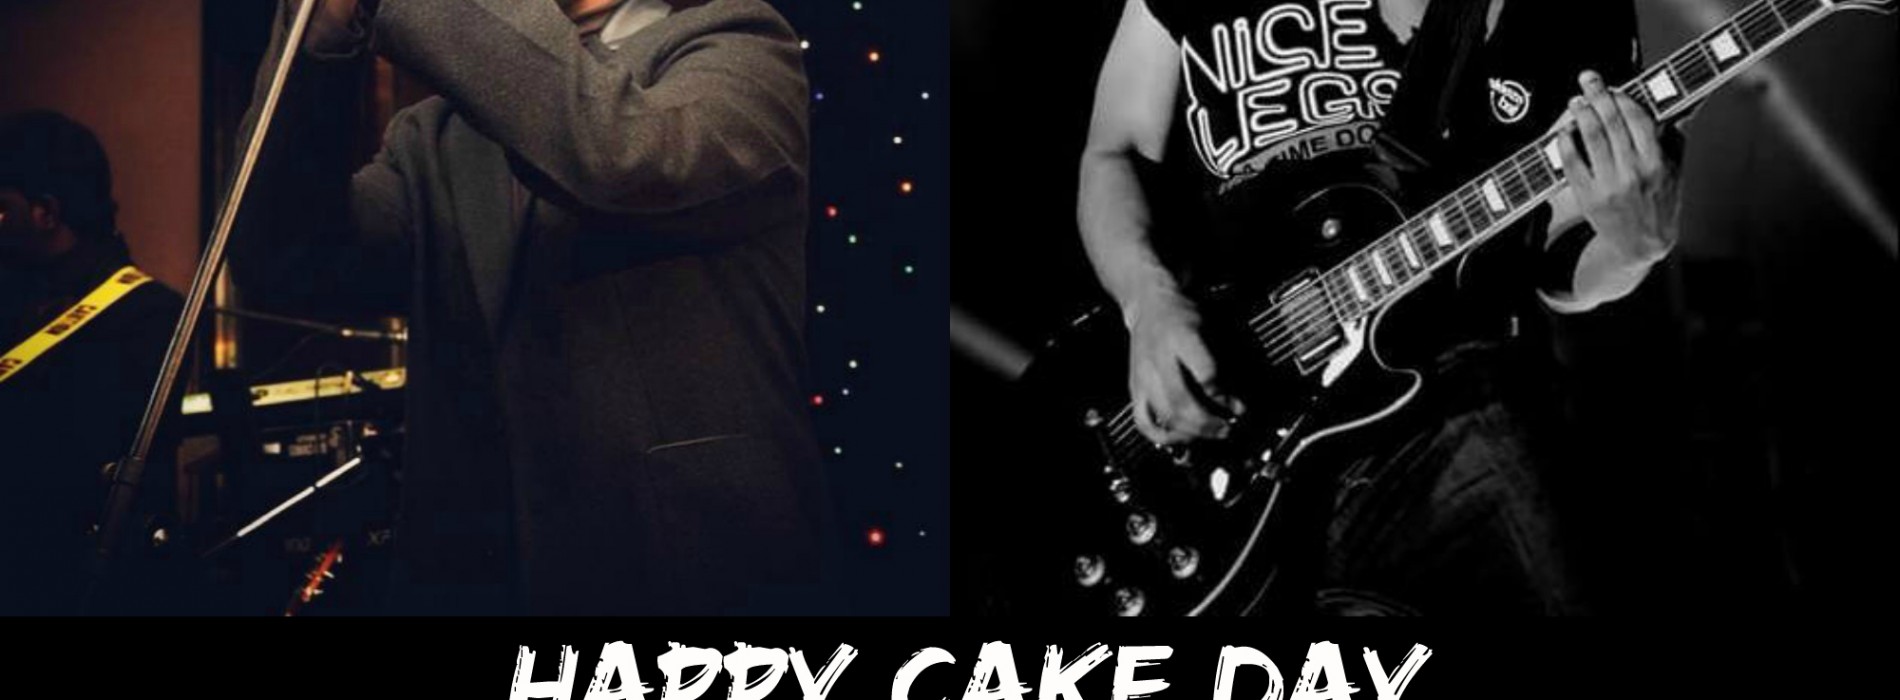 Happy Cake Day To Kamishka & Dhanushka